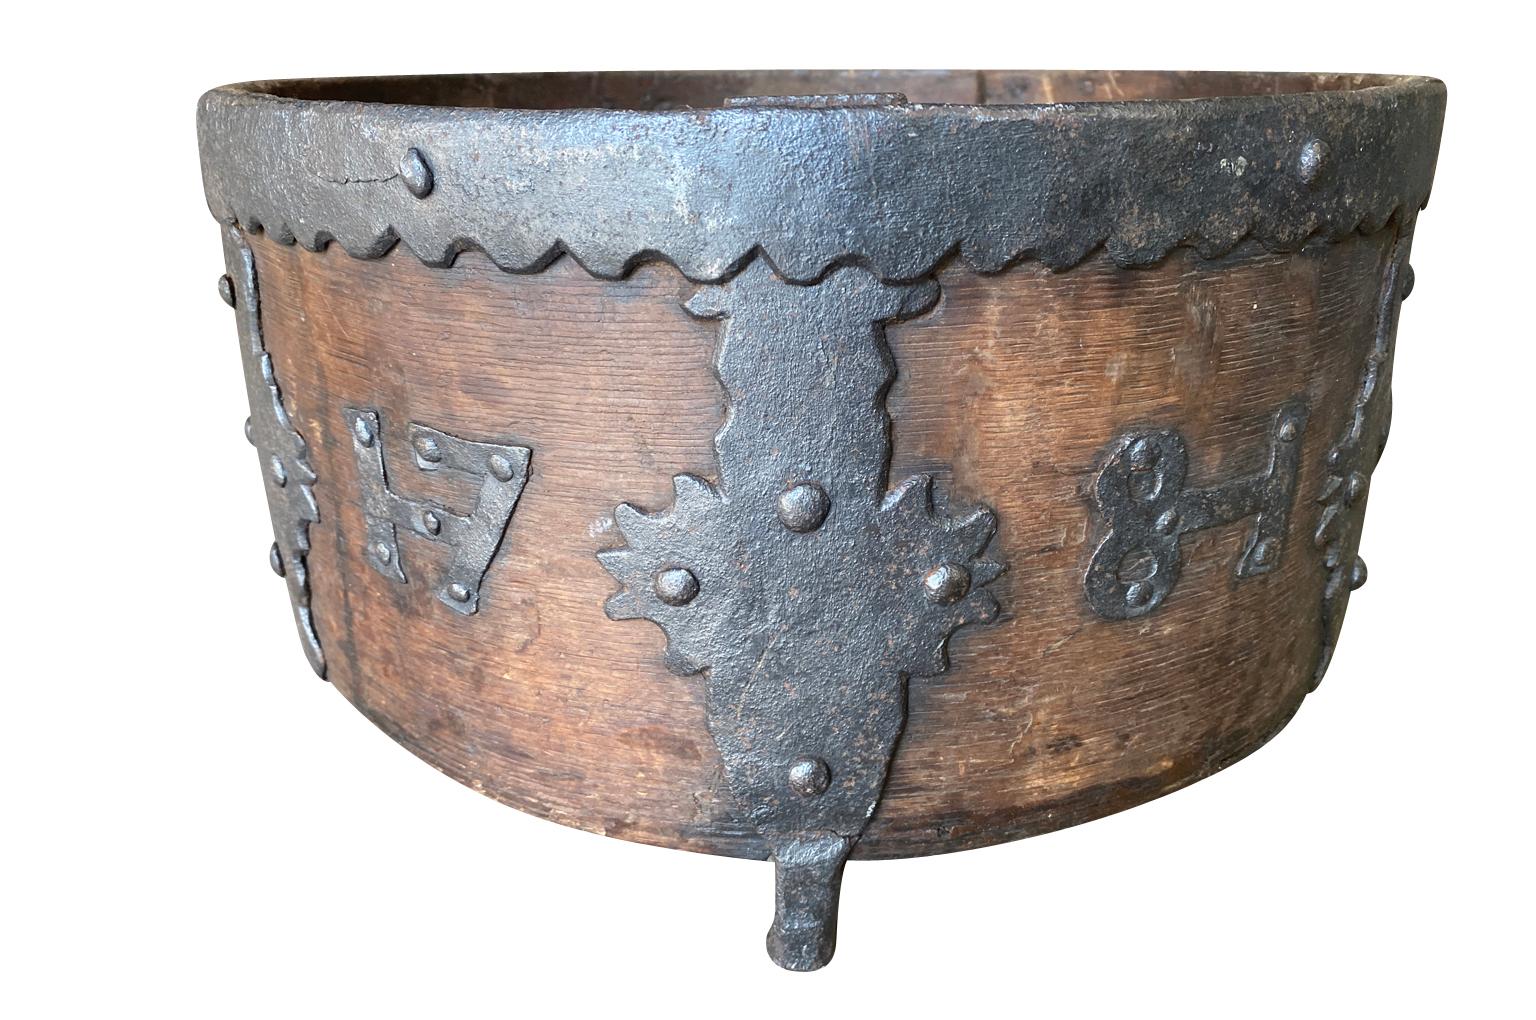 Une superbe mesure à grain du 18e siècle provenant d'Allemagne, en bois et avec des détails en fer exceptionnels, datée de 1781.  Cette mesure à grain était à l'origine utilisée pour servir du grain aux chevaux.  Fabuleuse patine. 